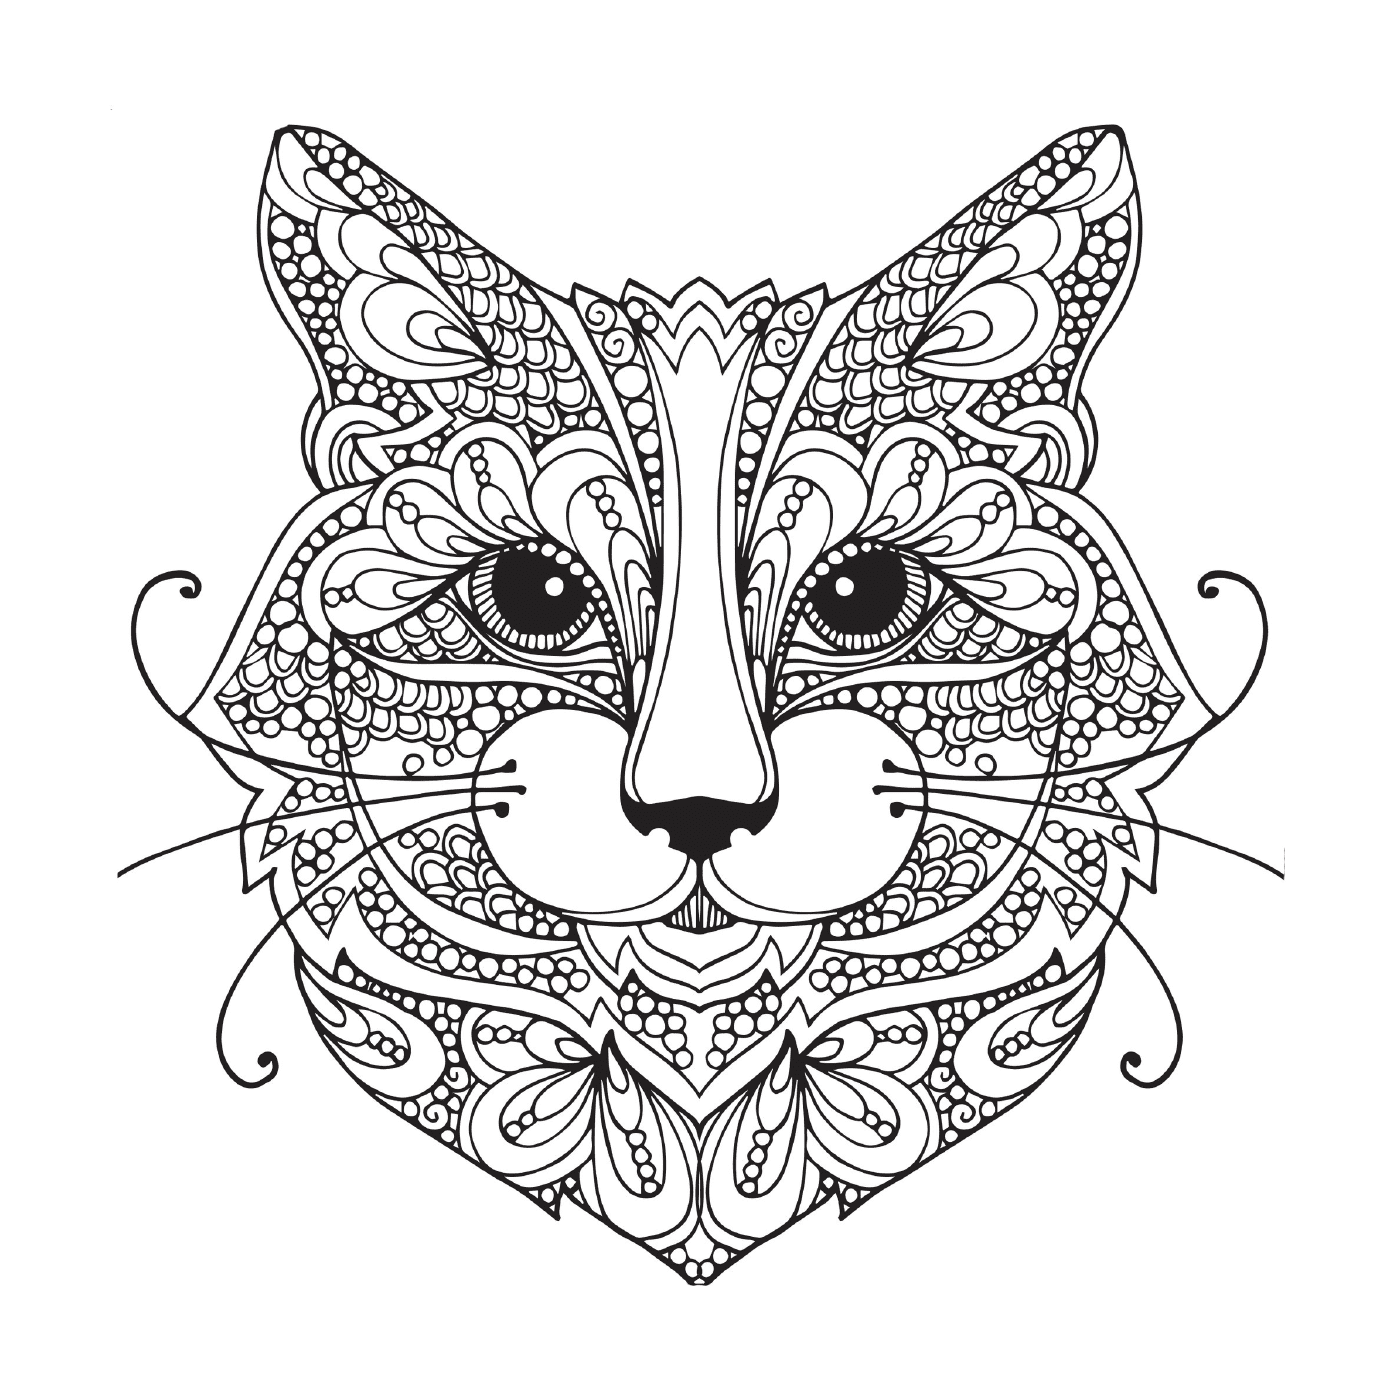  Gato com padrões ornamentais no rosto 